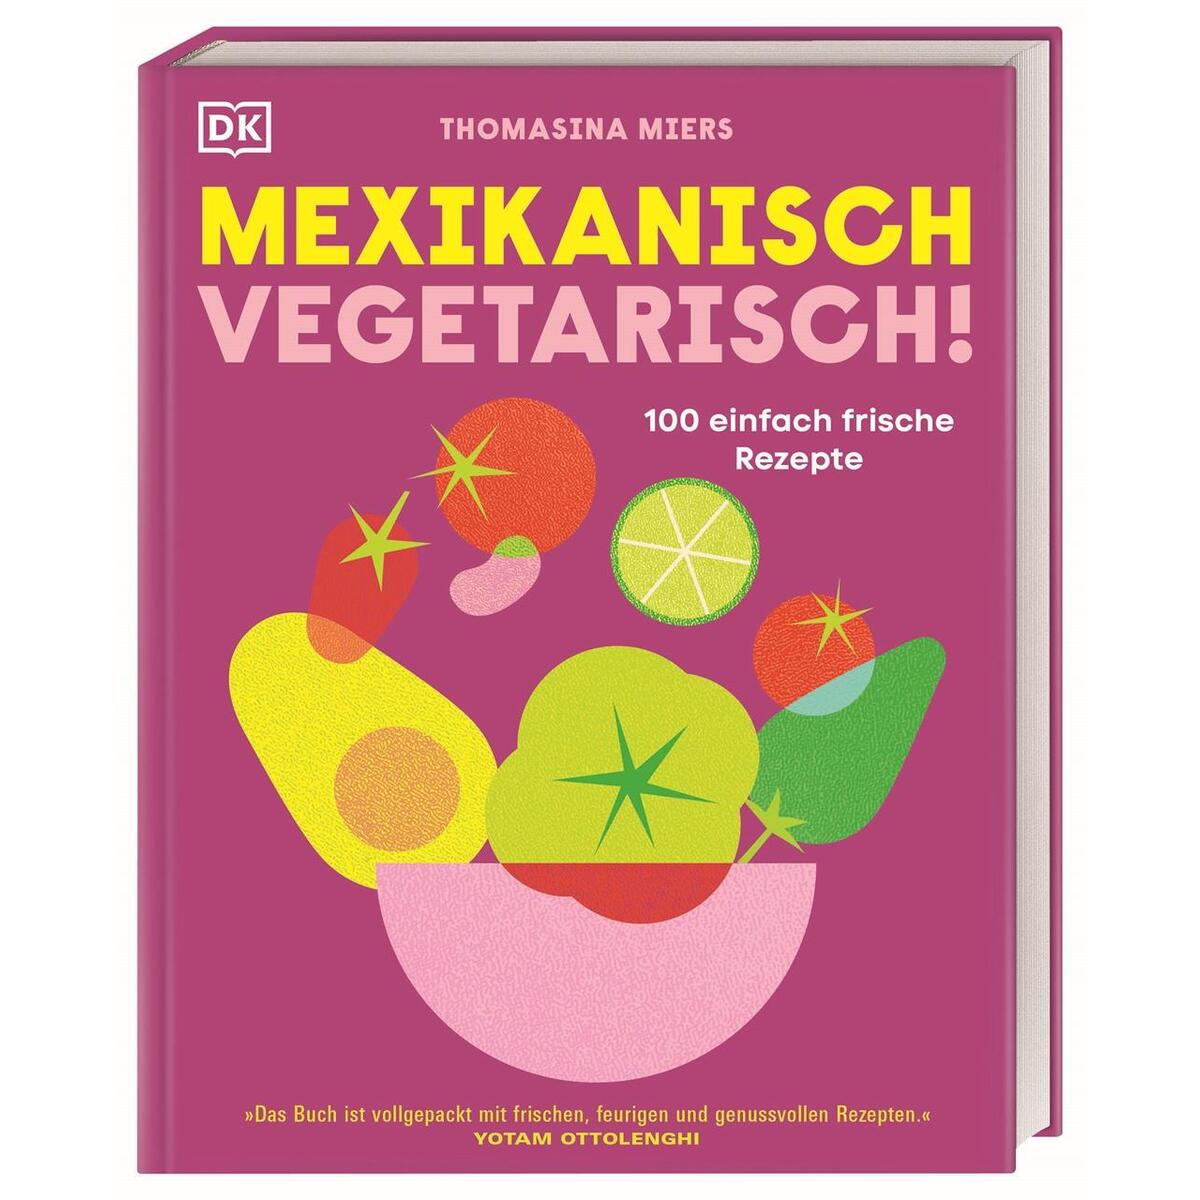 Mexikanisch vegetarisch! von Dorling Kindersley Verlag